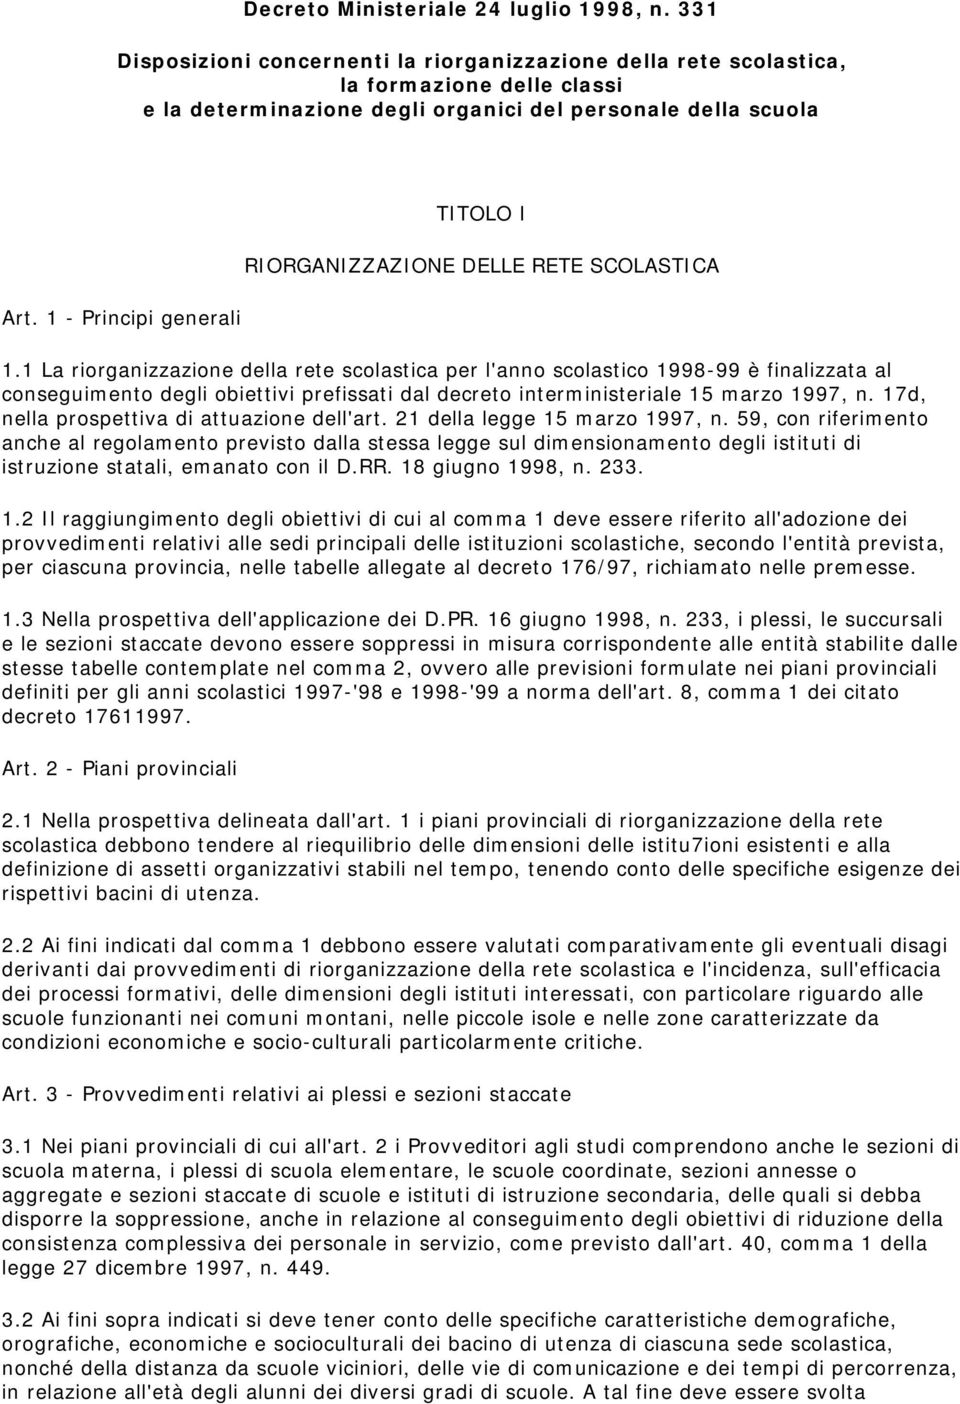 1 - Principi generali TITOLO I RIORGANIZZAZIONE DELLE RETE SCOLASTICA 1.